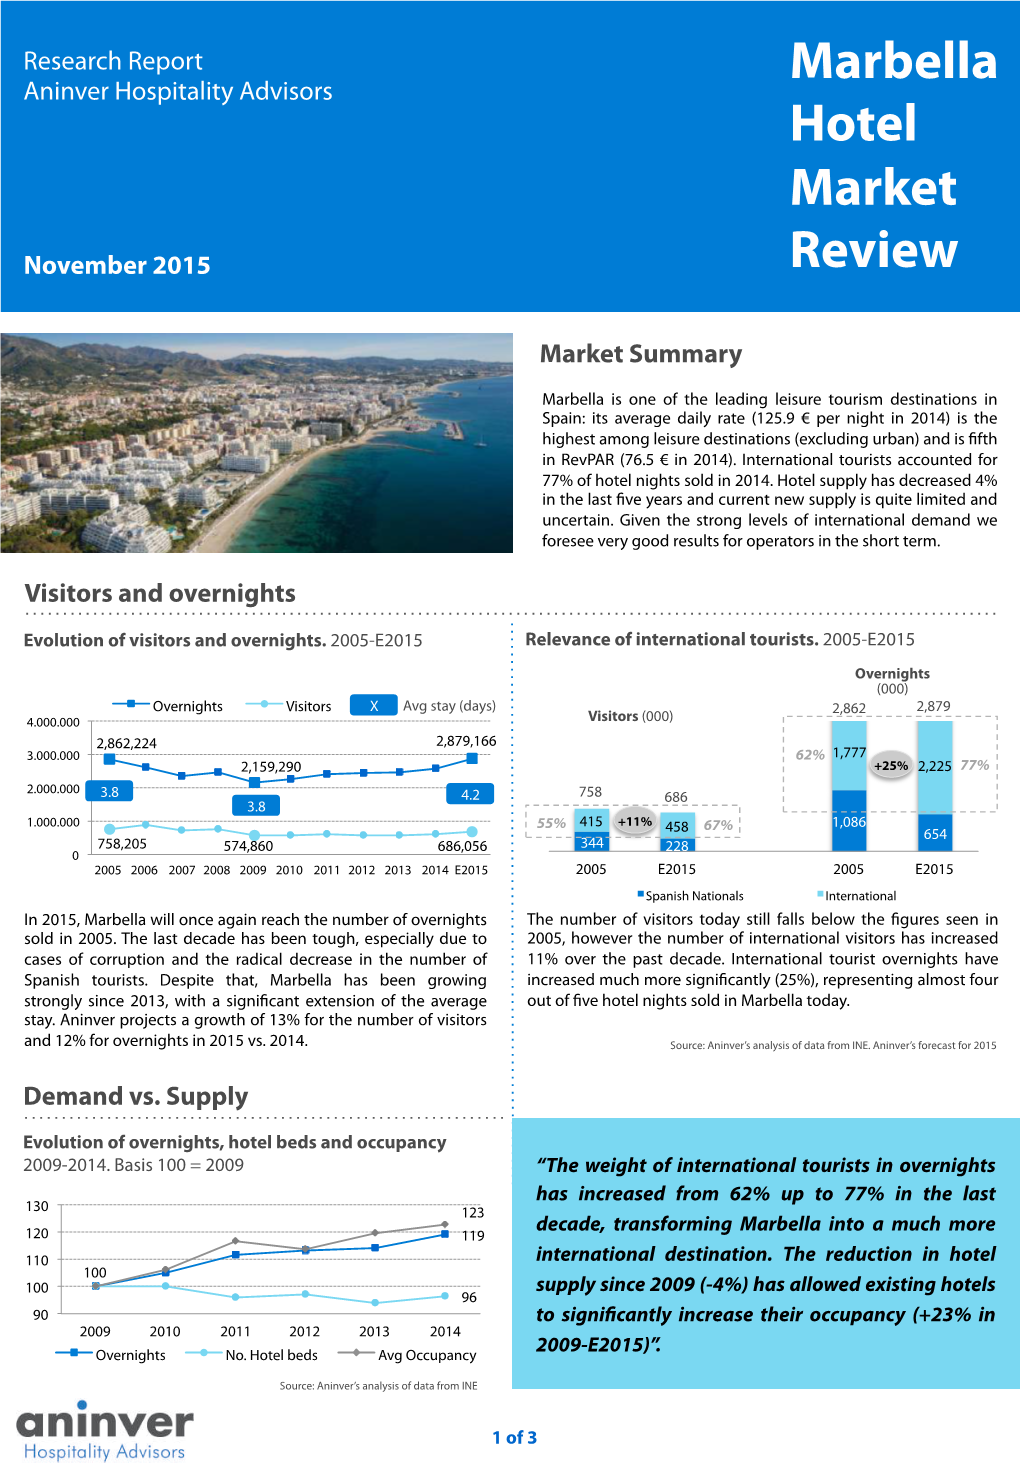 Marbella Hotel Market Review Nov 2015